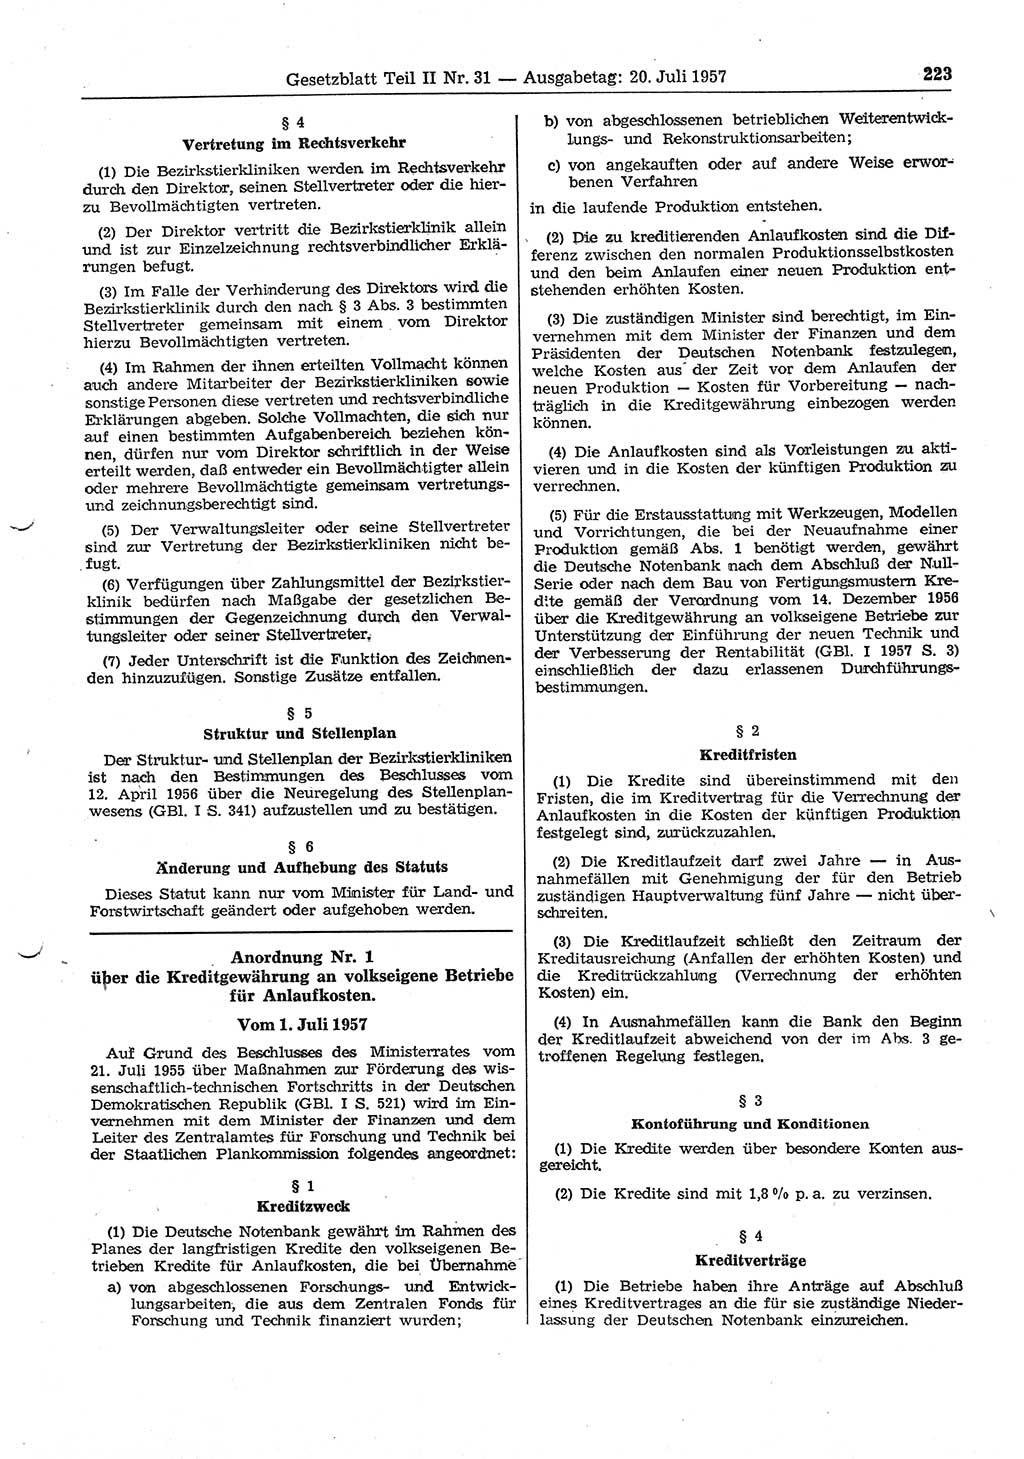 Gesetzblatt (GBl.) der Deutschen Demokratischen Republik (DDR) Teil ⅠⅠ 1957, Seite 223 (GBl. DDR ⅠⅠ 1957, S. 223)